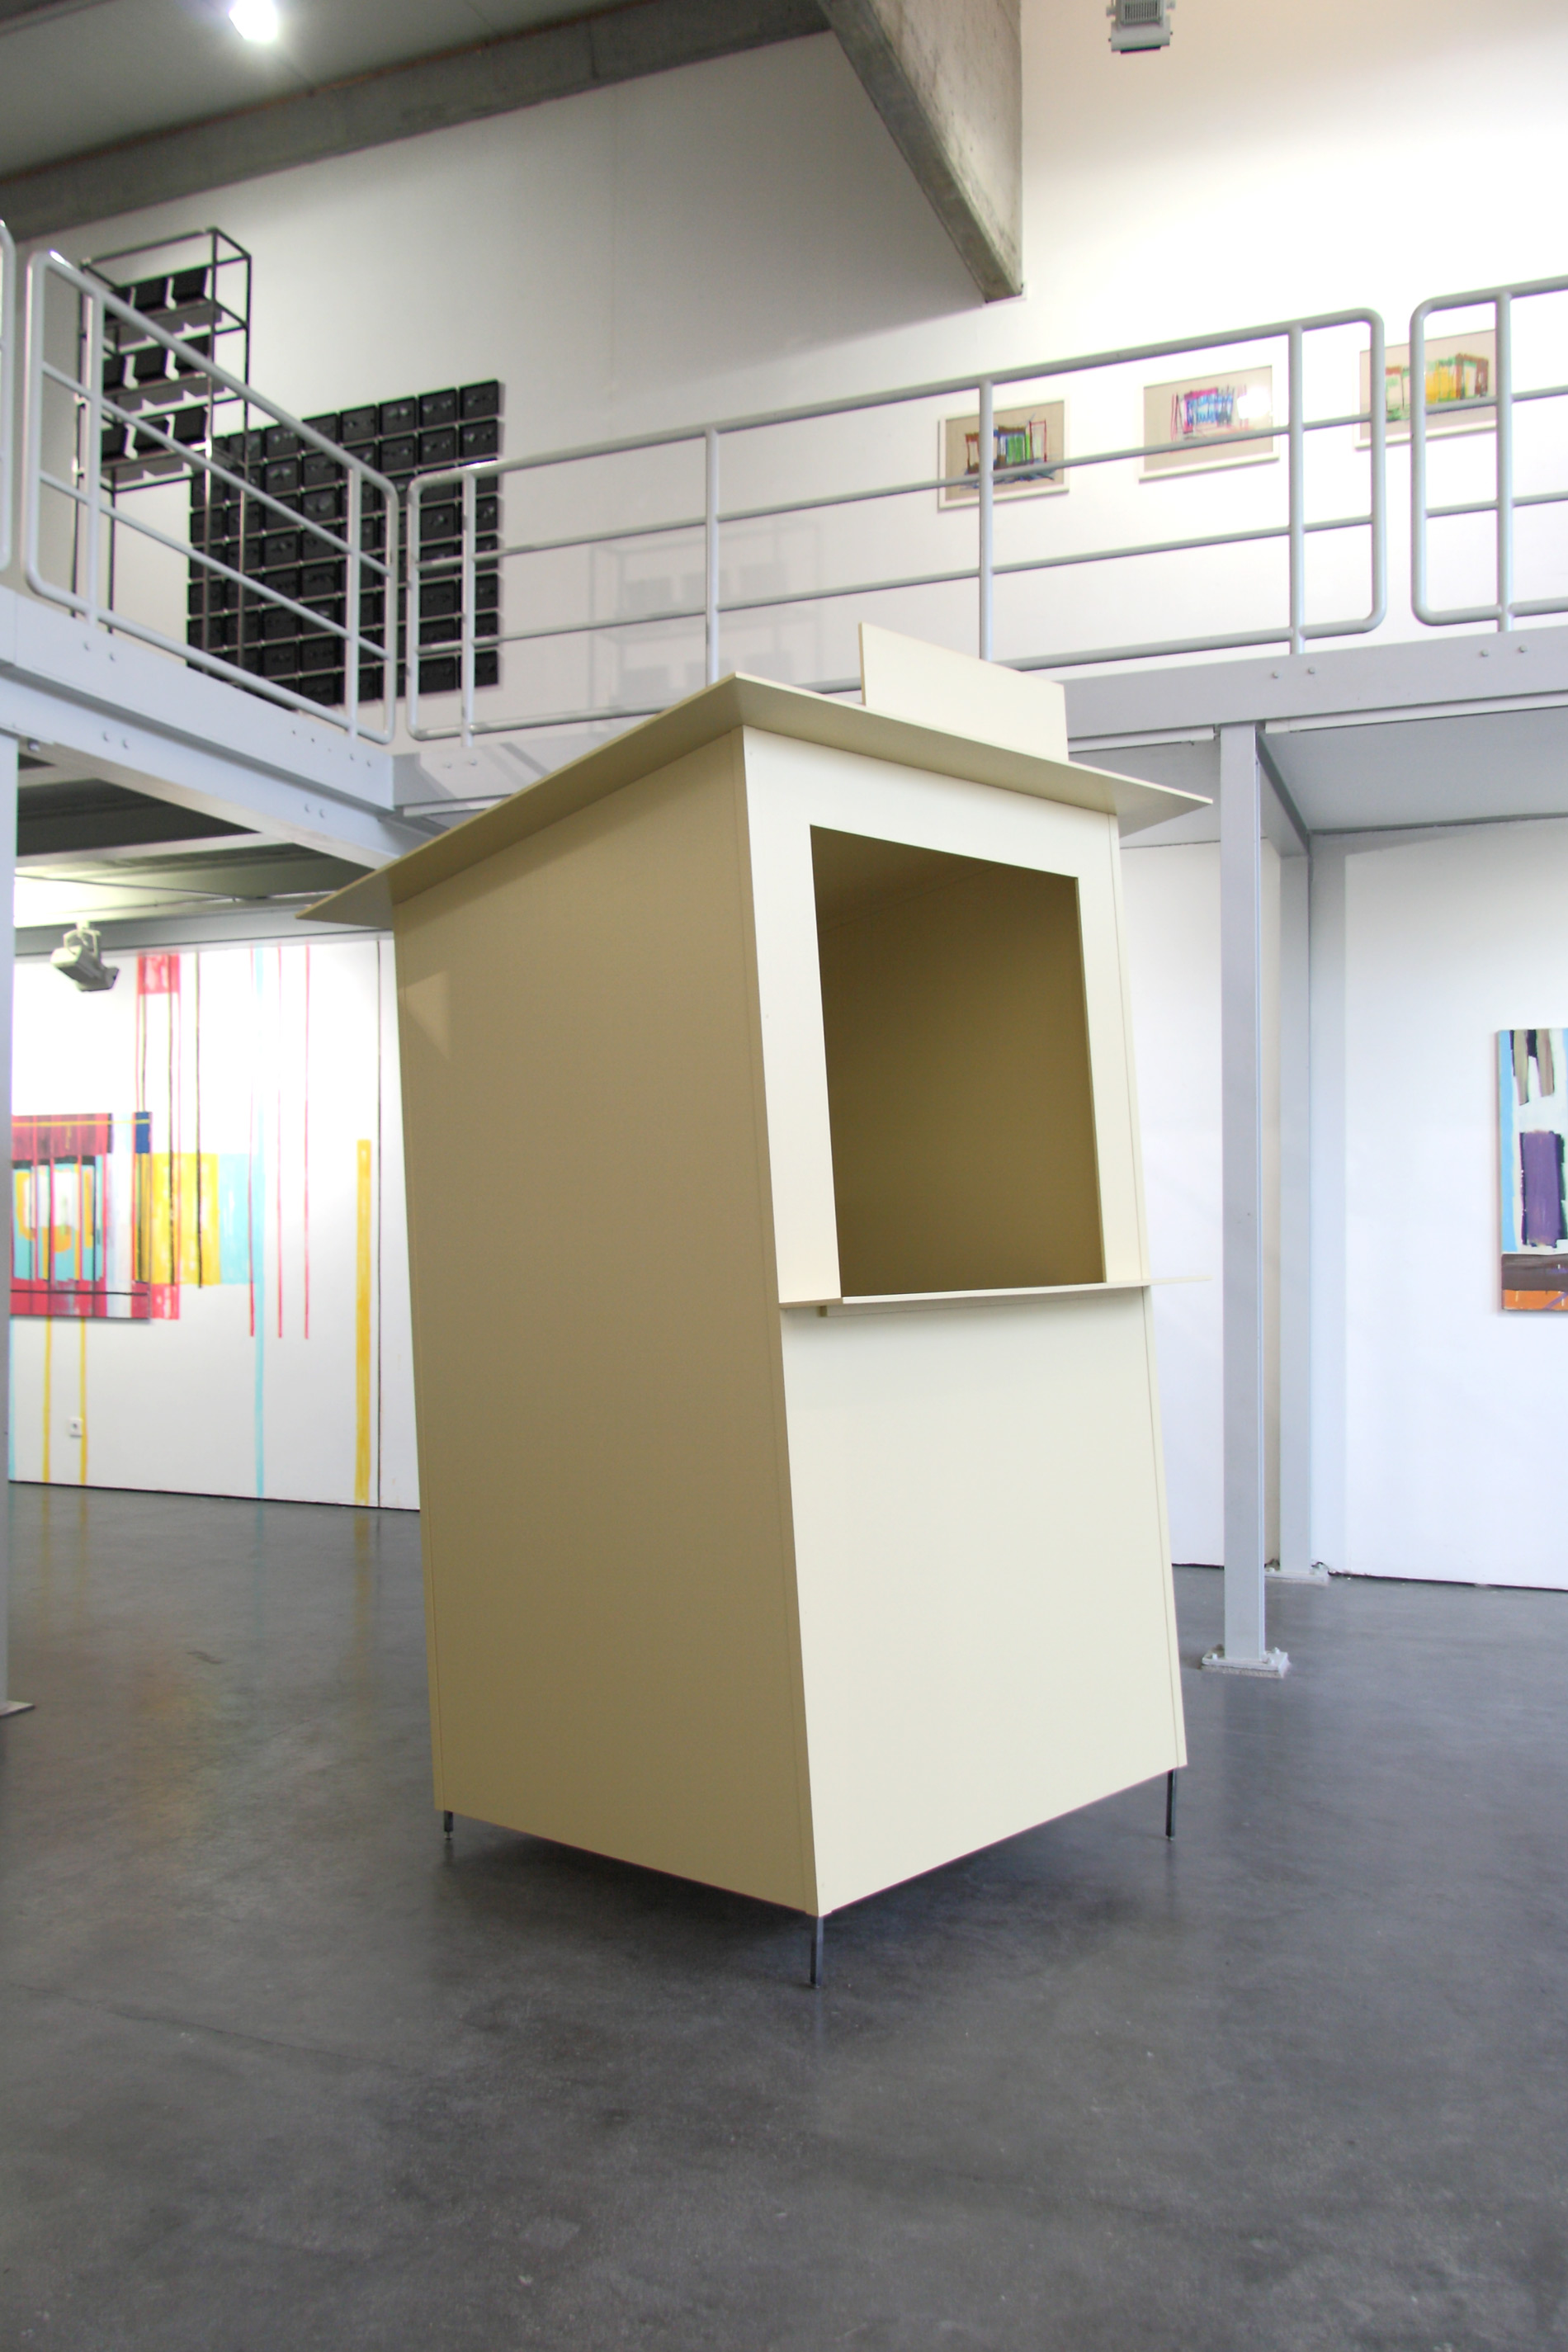 Michael Göbel - Ausstellung "Raumfluchten" -  Galerie im Artforum, Offenburg, 2014